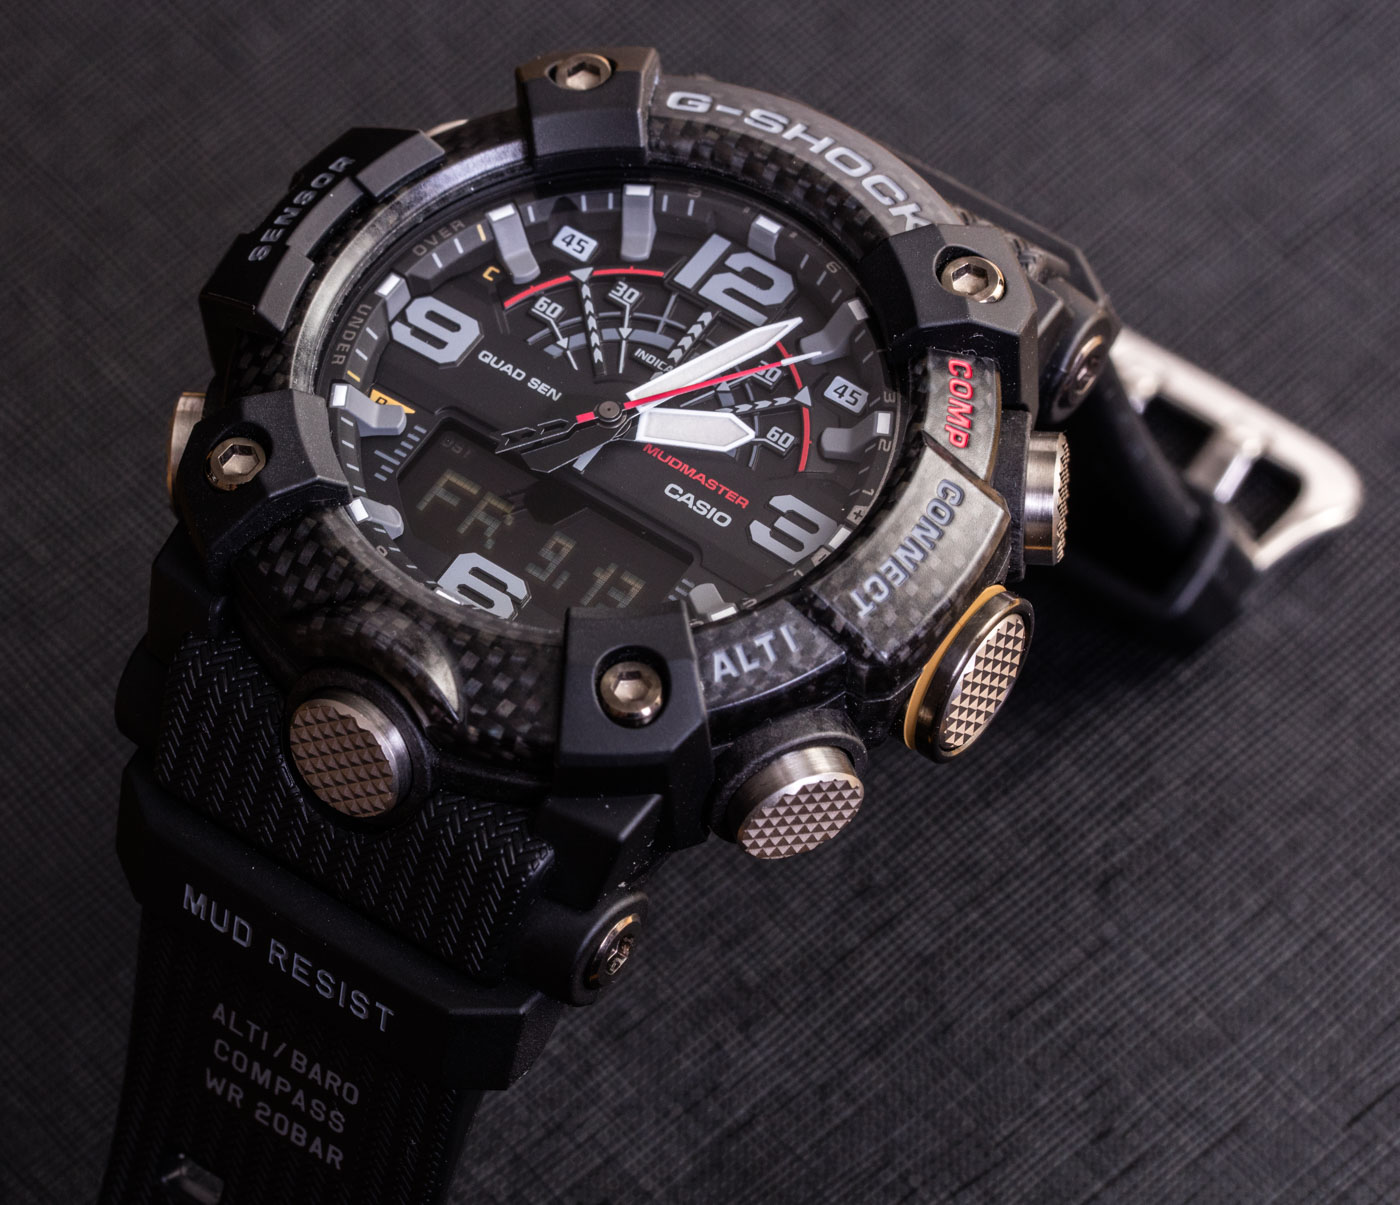 Casio G-Shock Mudmaster GG-B100 Watch Of Style, Value, |